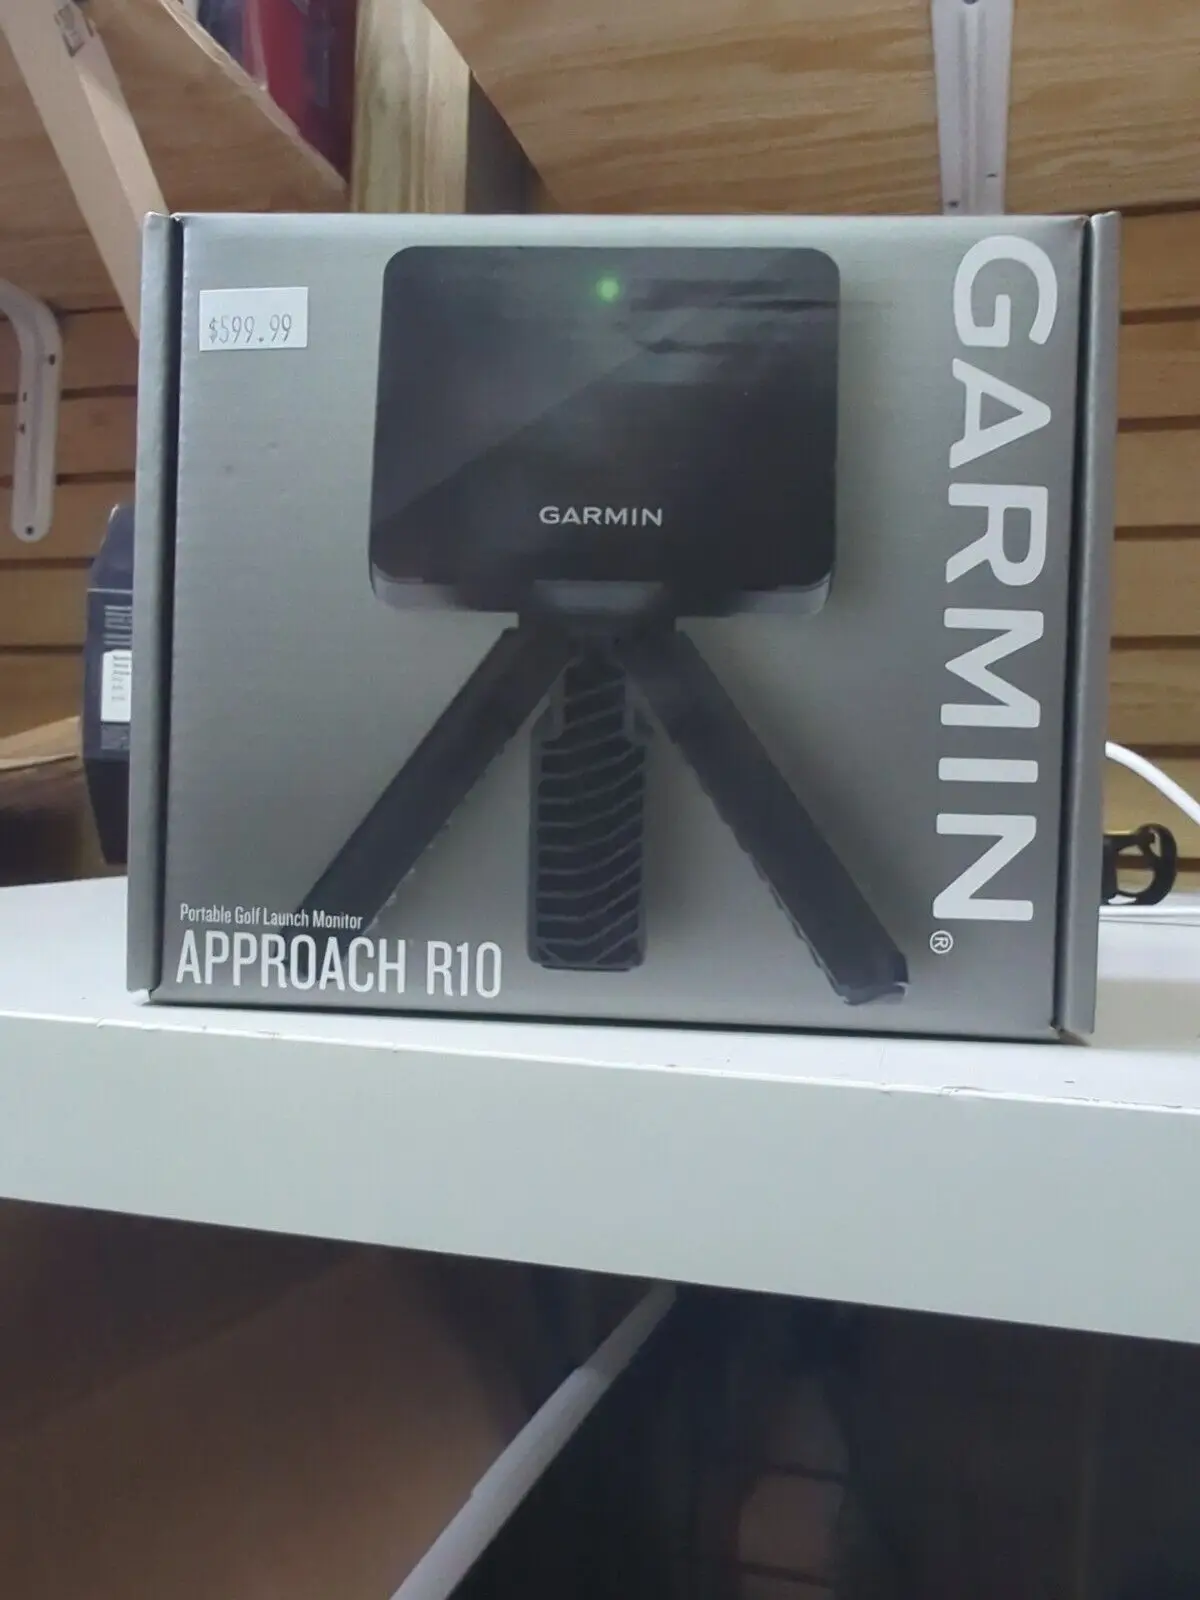 

Buy 2 get 1 free GARMIN Approach R10 Launch Monitor